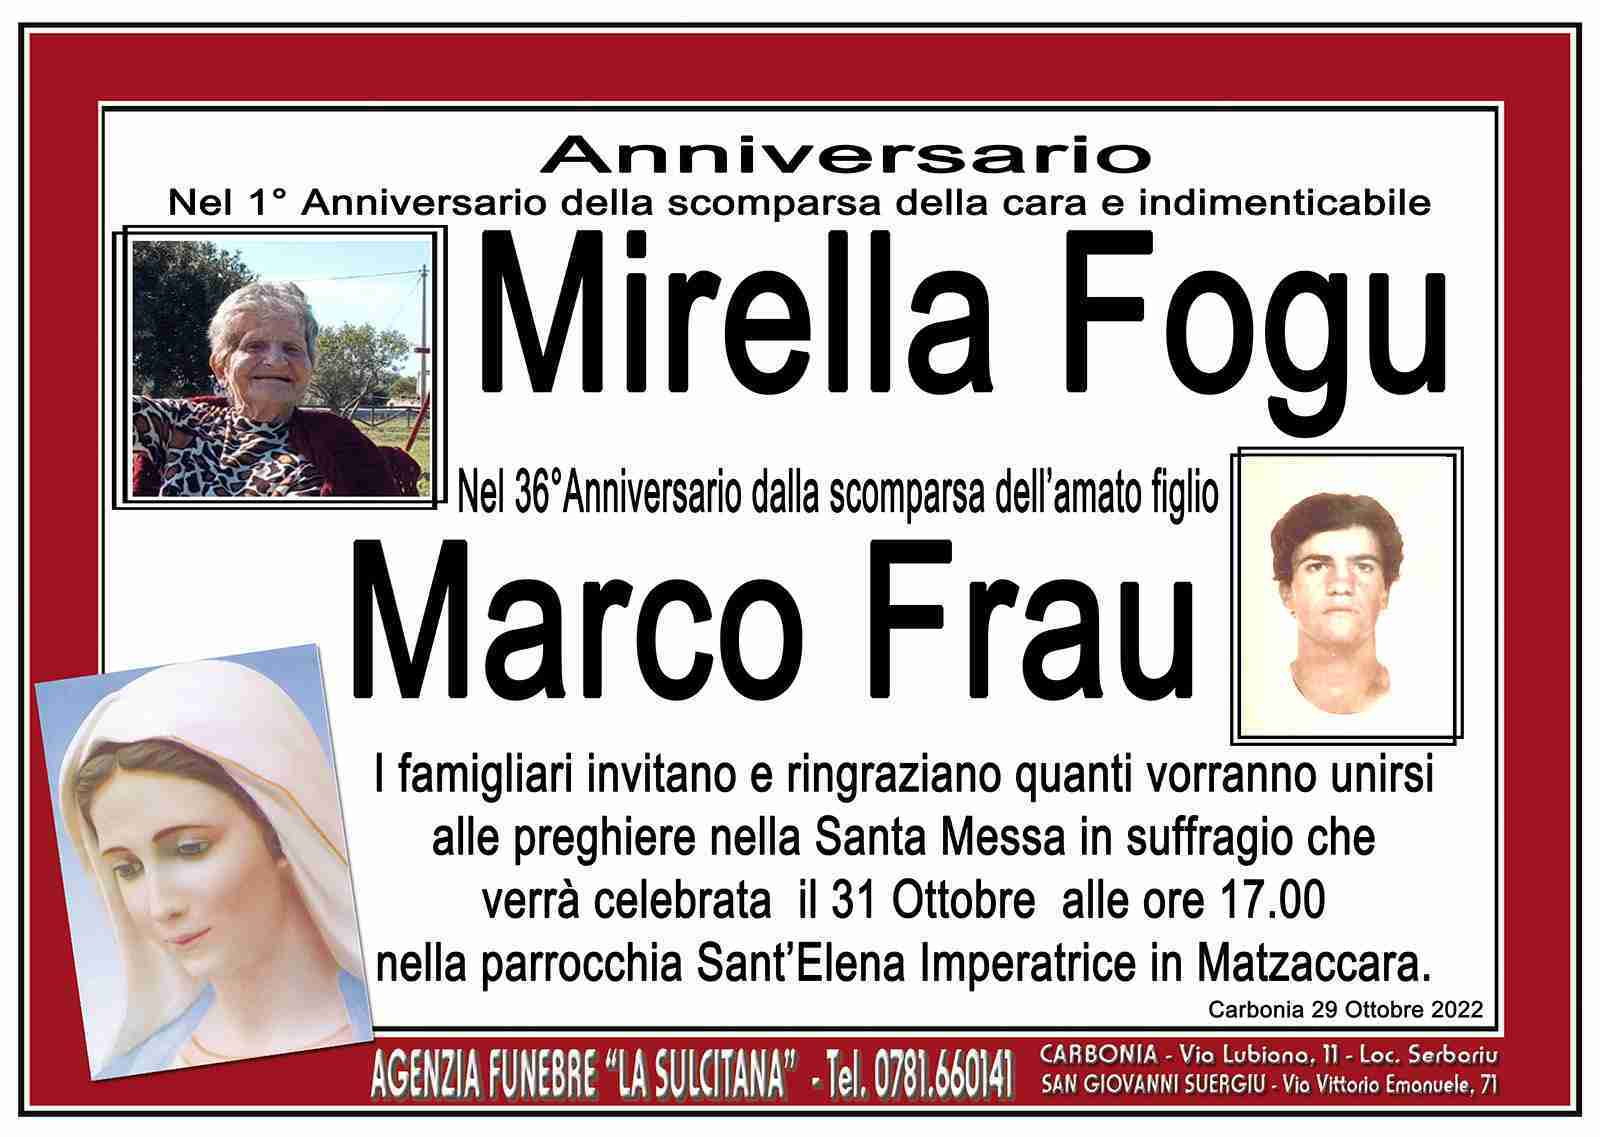 Mirella Fogu e Marco Frau